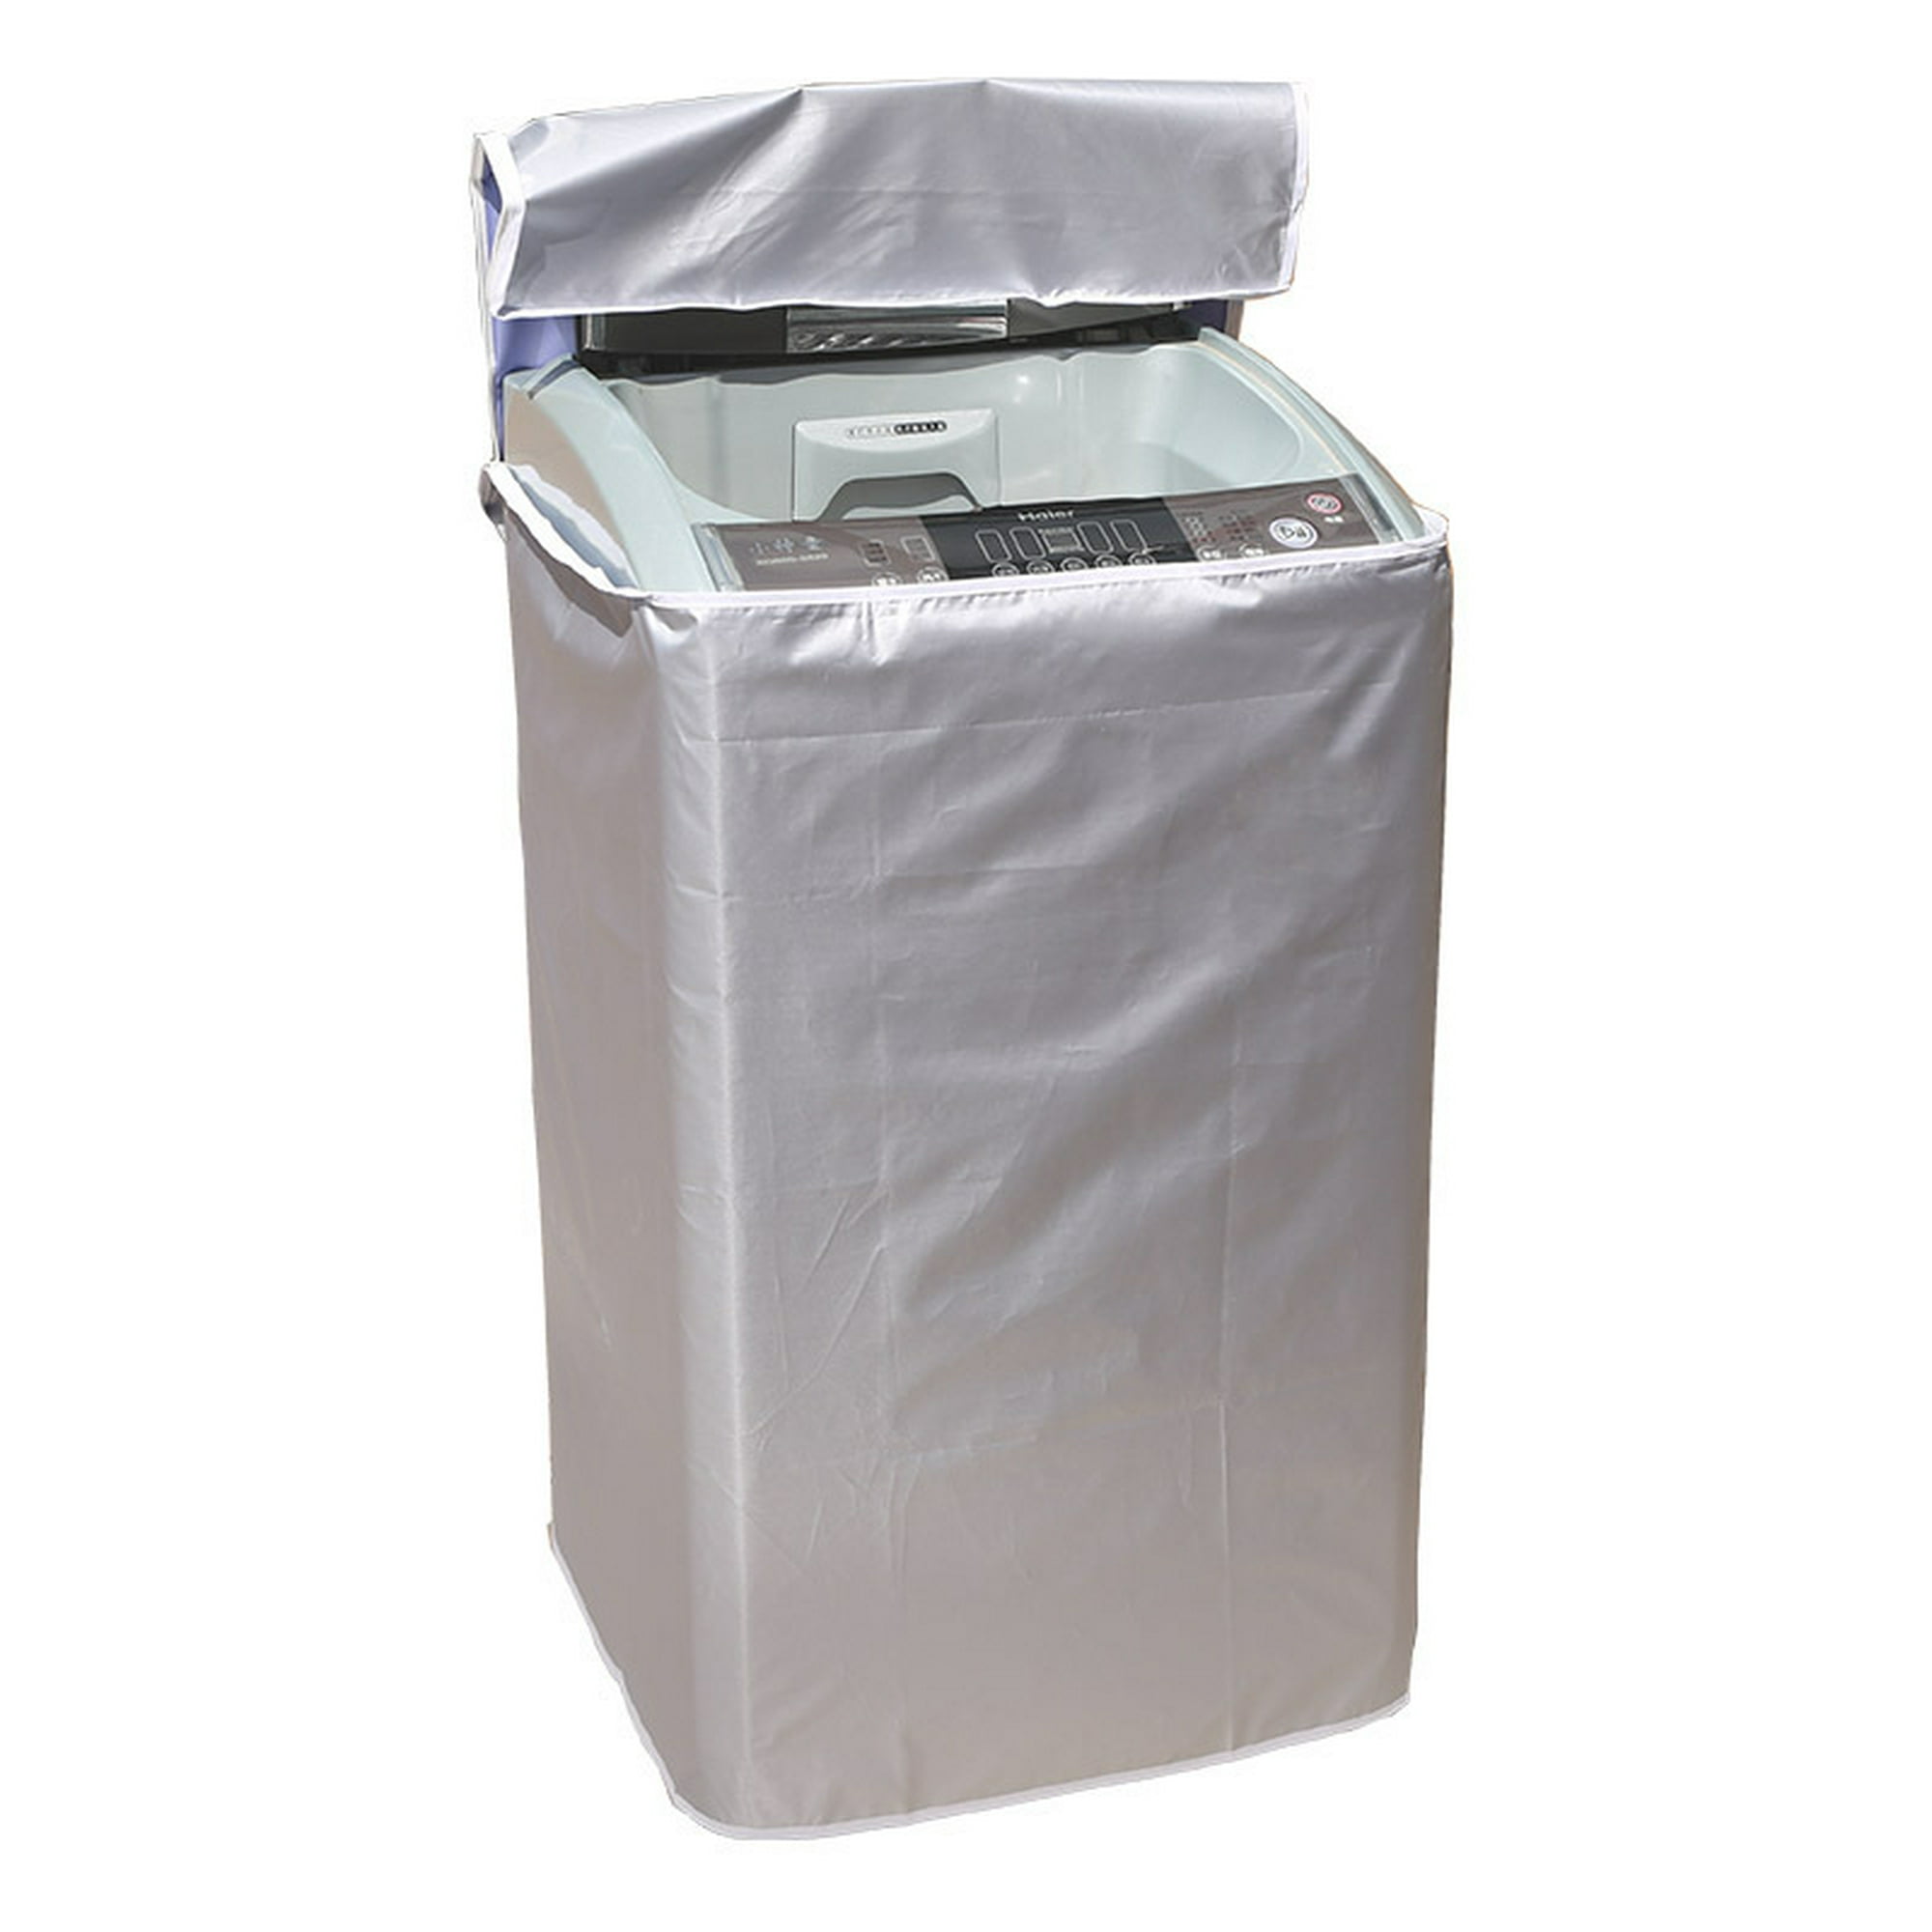 Cubierta de lavadora automática, Protector impermeable, a prueba